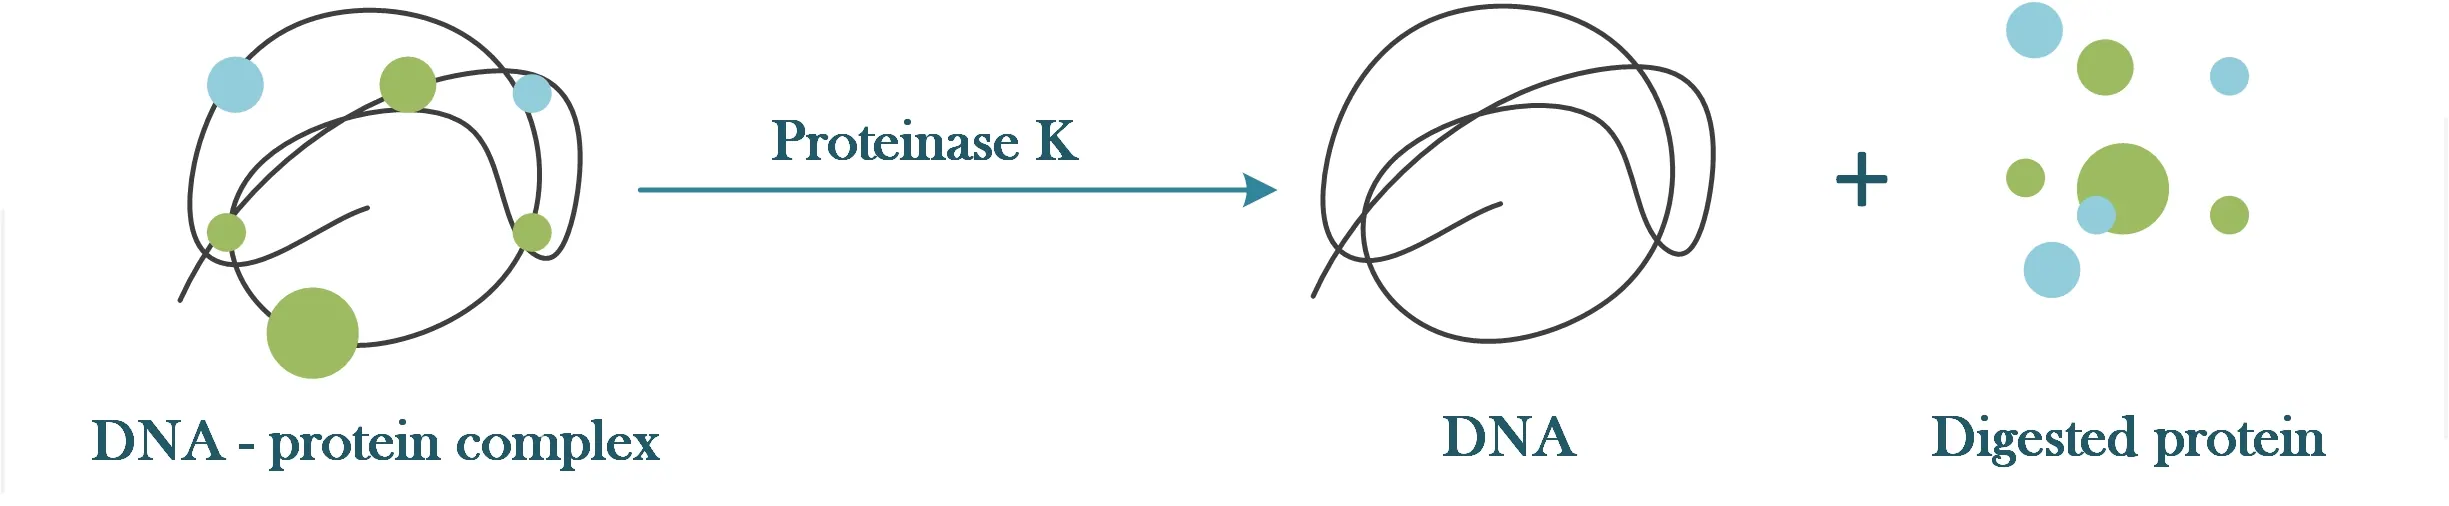 Proteinase K 